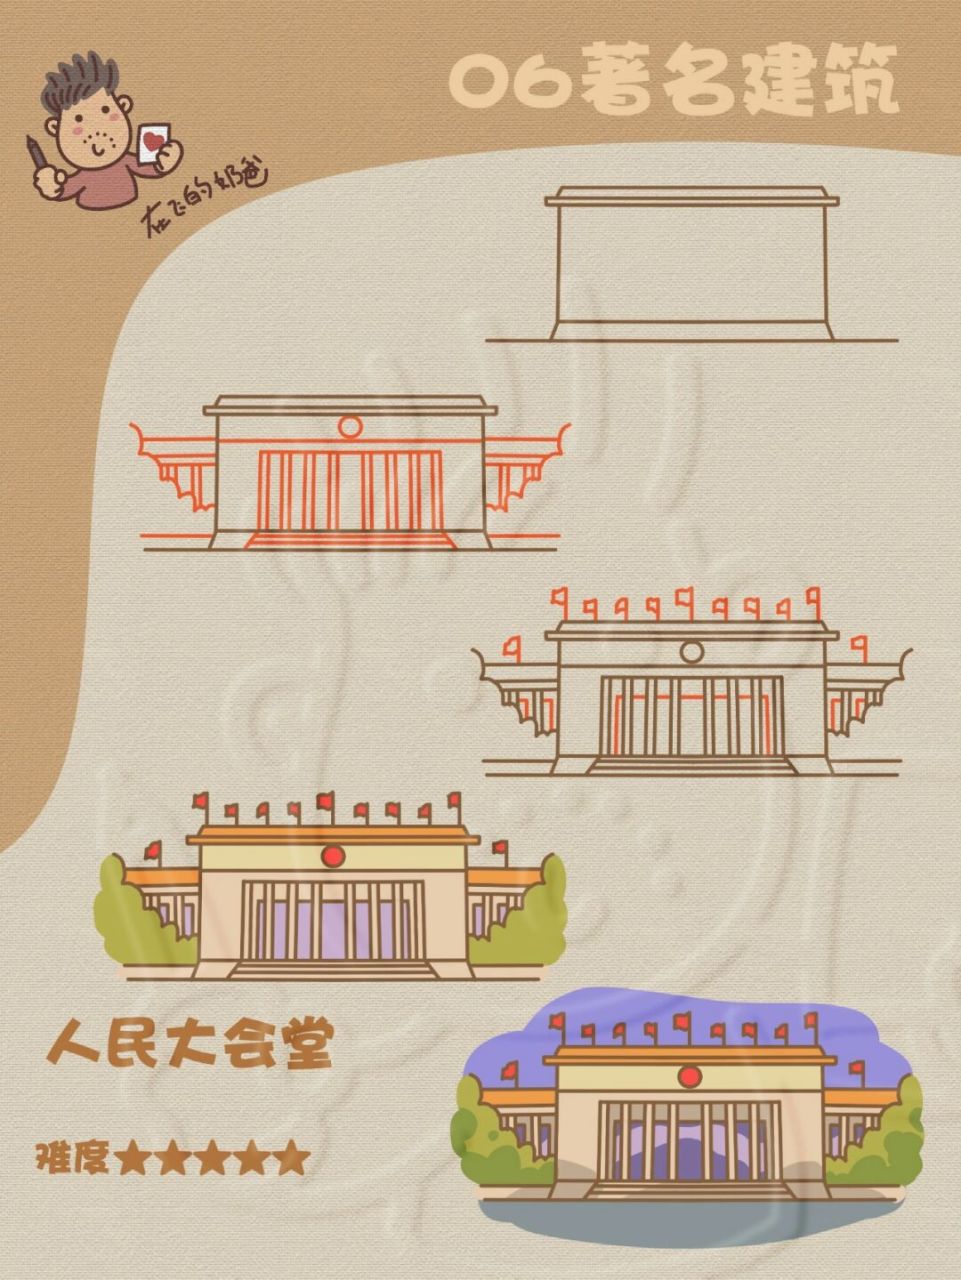 中国的首都简笔画图片